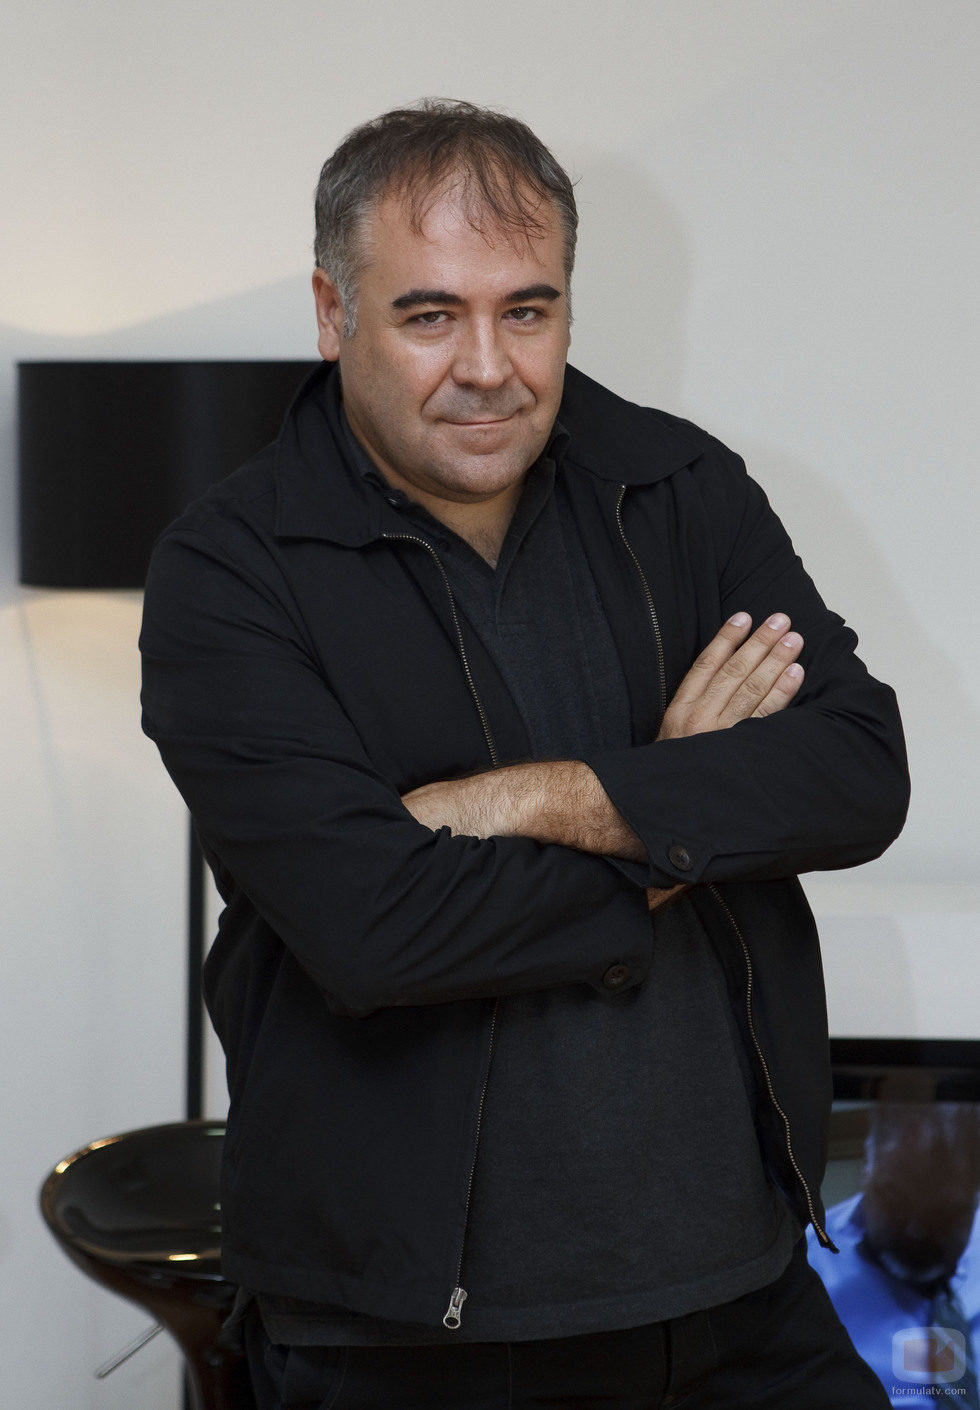 El presentador de 'Al rojo vivo' Antonio García Ferreras posando